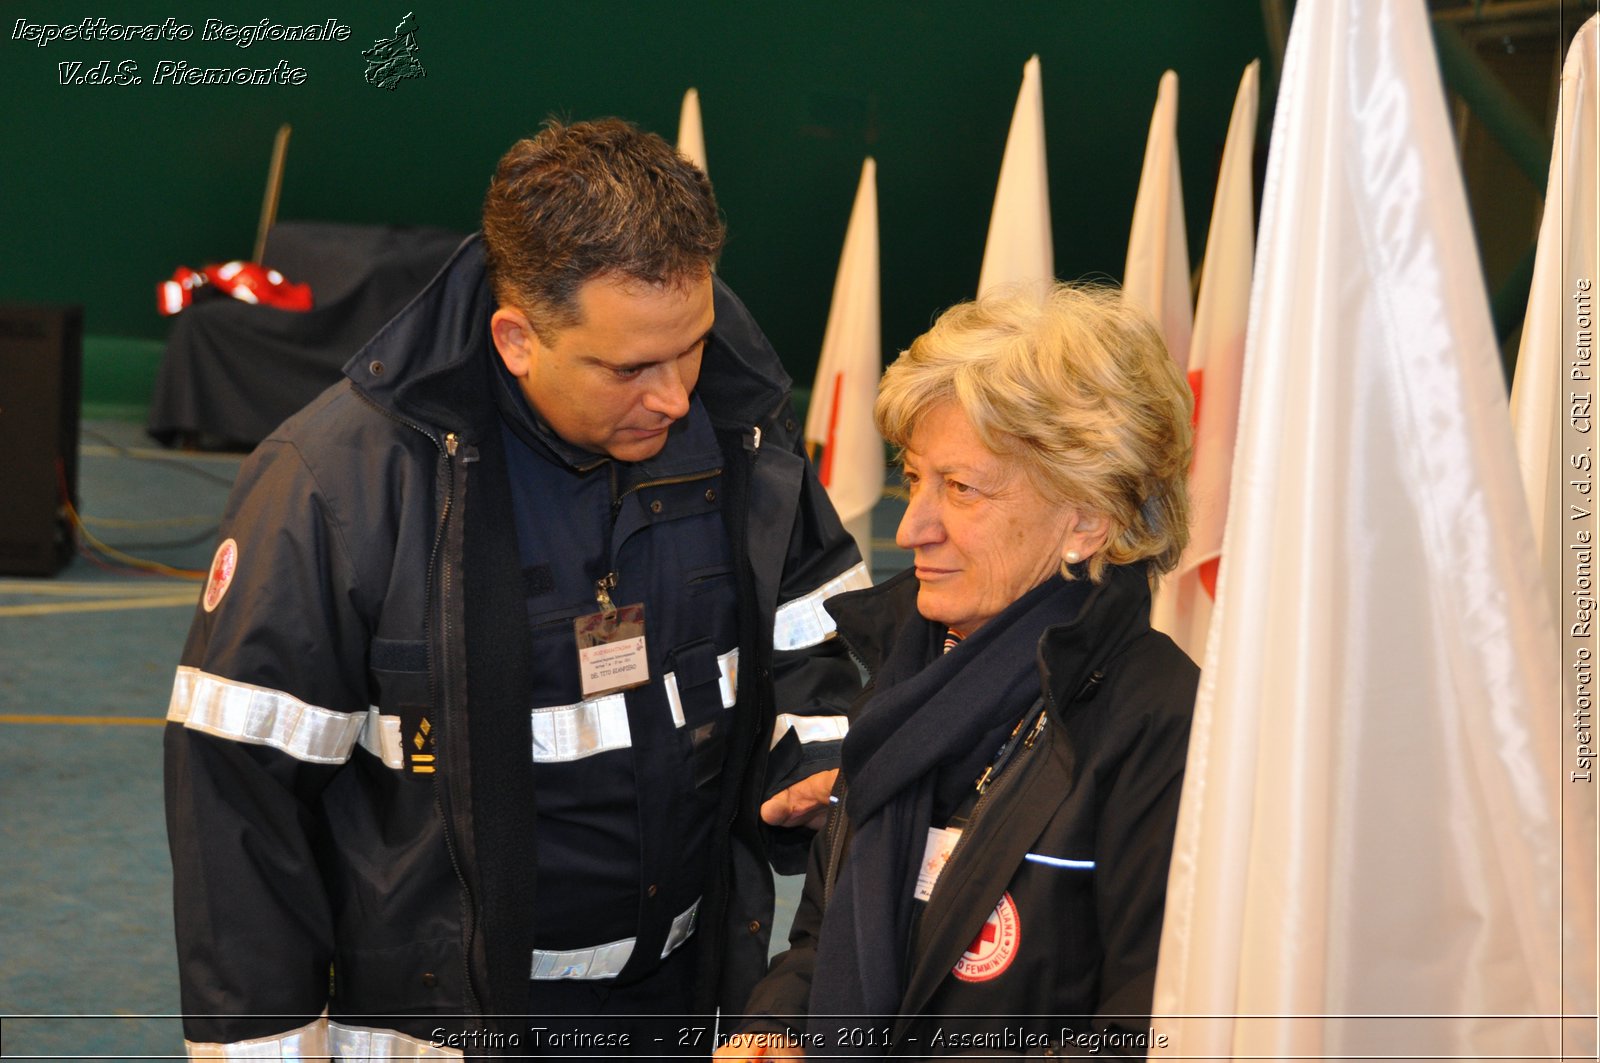 Racconigi  - 7 ottobre 2011 - Giornata del soccorso CRT -  Croce Rossa Italiana - Ispettorato Regionale Volontari del Soccorso Piemonte